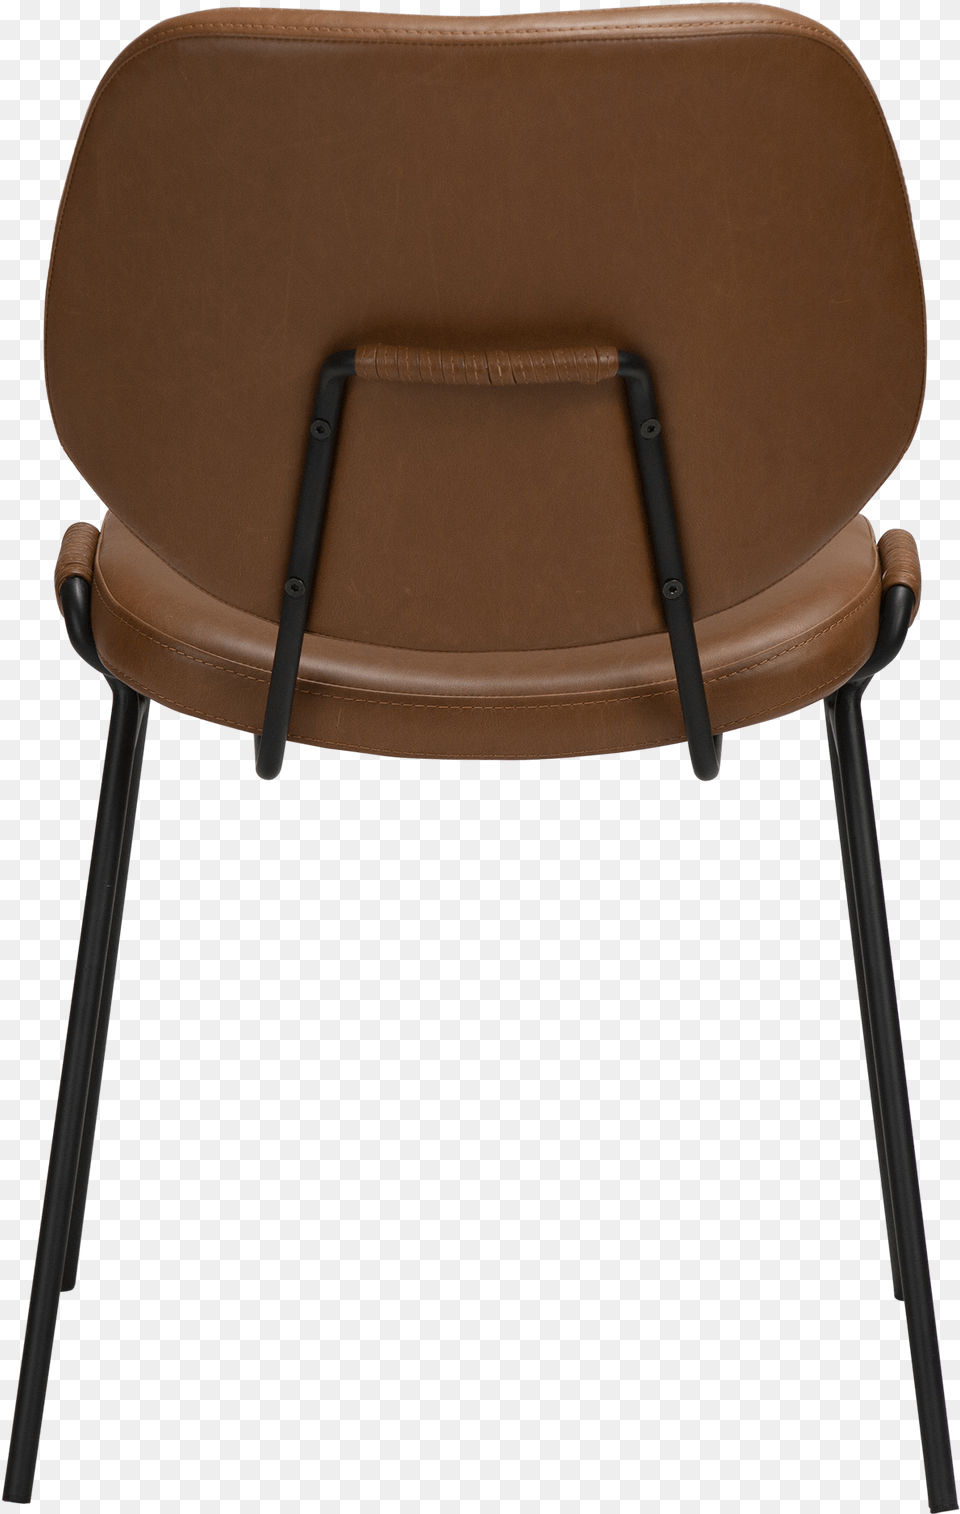 Yeet Chair Black Metal Legs Chair, Furniture, Cushion, Home Decor, Armchair Png Image